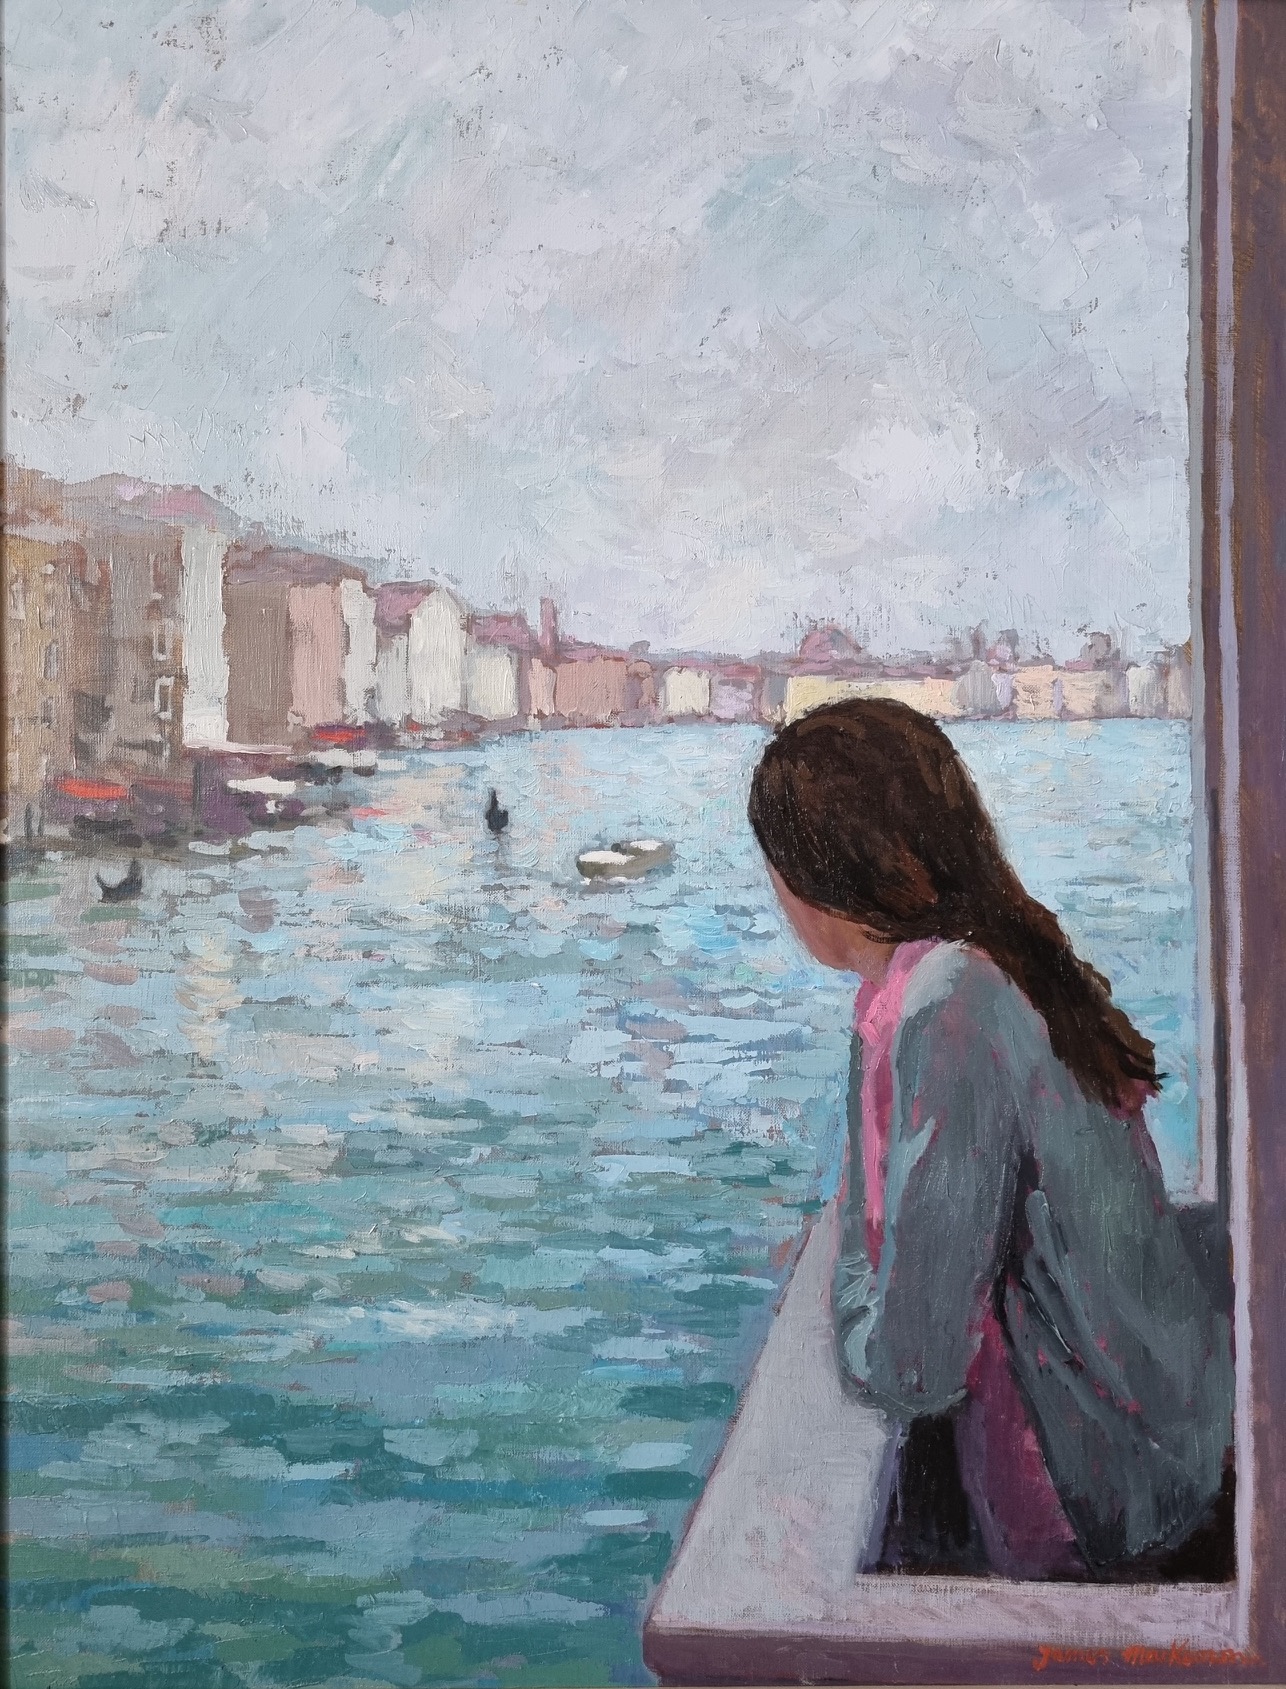 'The Girl on the Balcony', oil on canvas, 65cm x 50cm, £2700